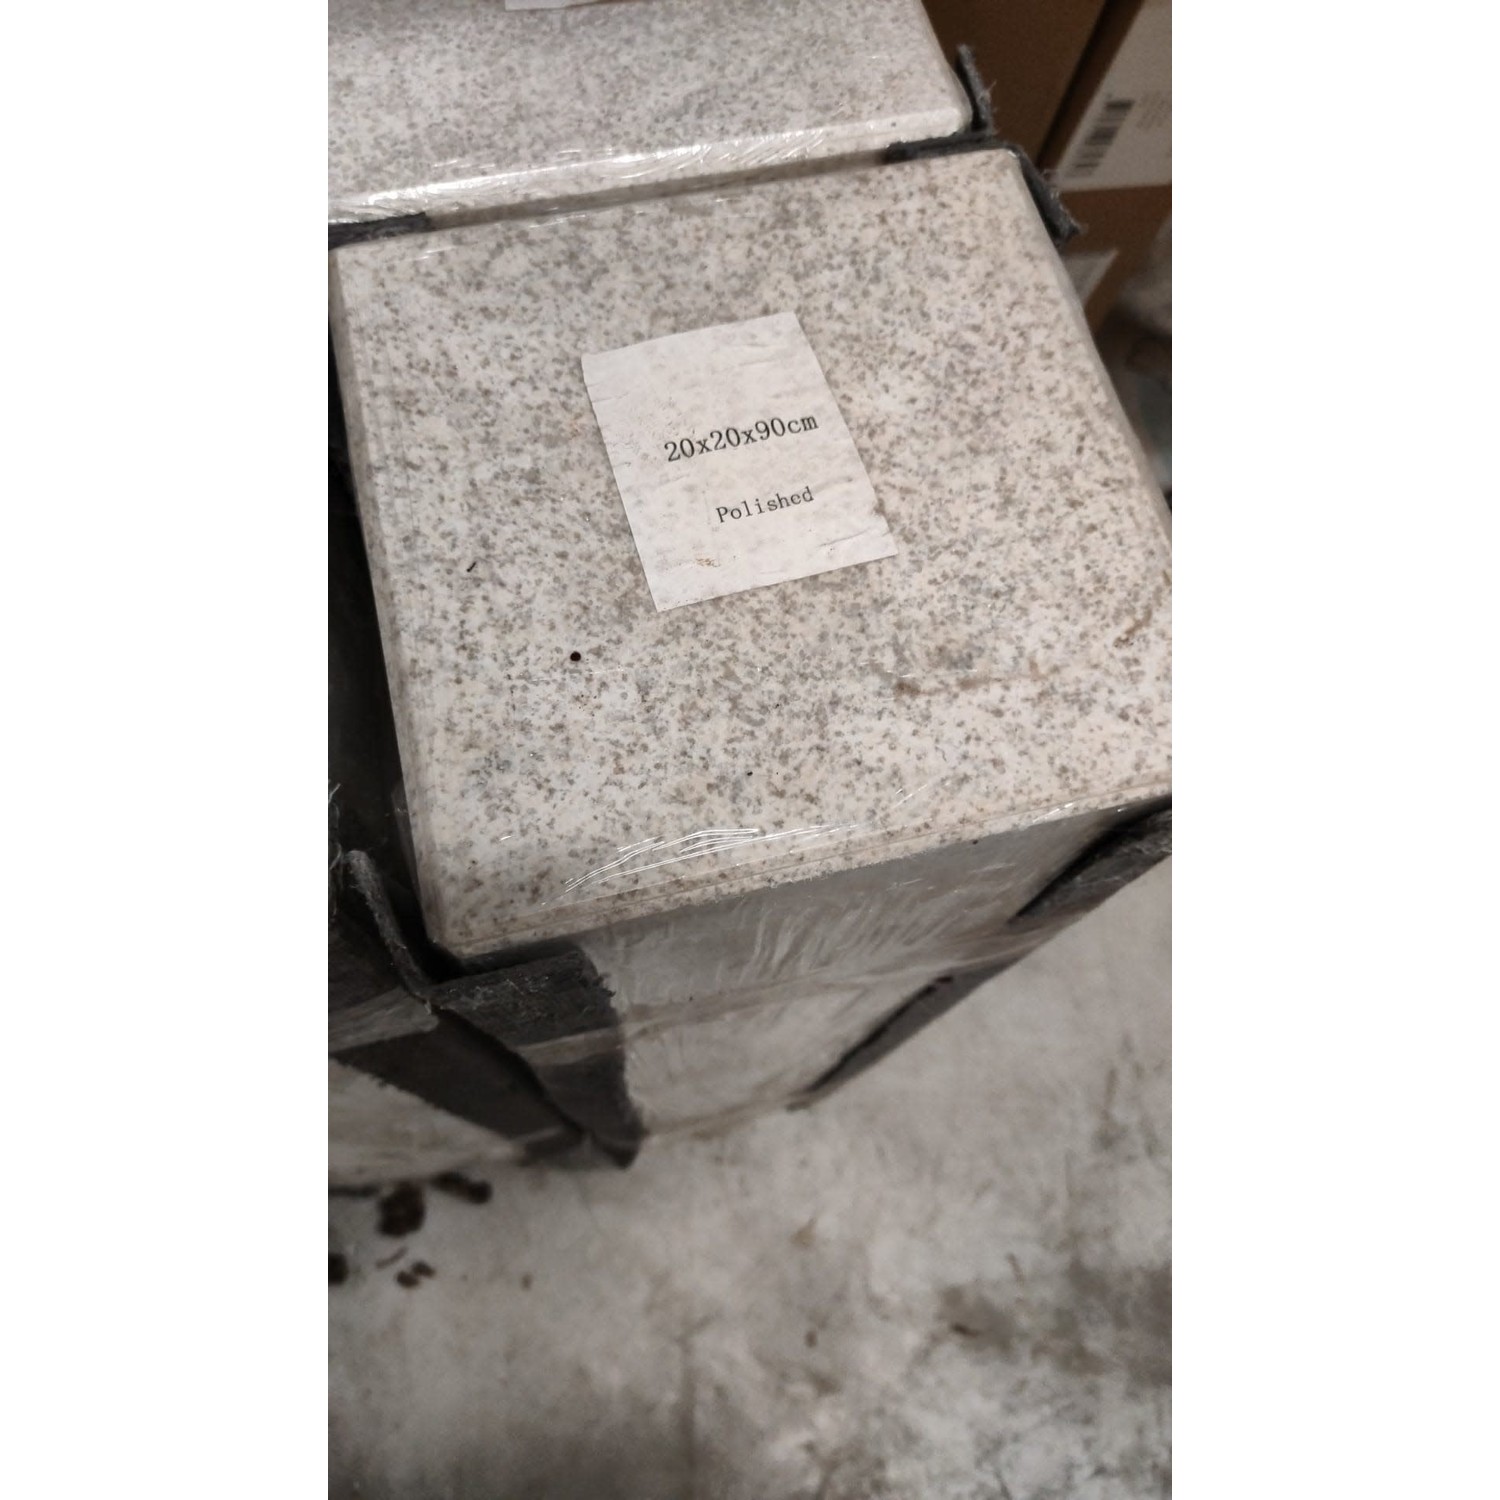 lava Instrument tofu Zuil graniet wit gepolijst 20x20x90cm - Eliassen Home & Garden Pleasure